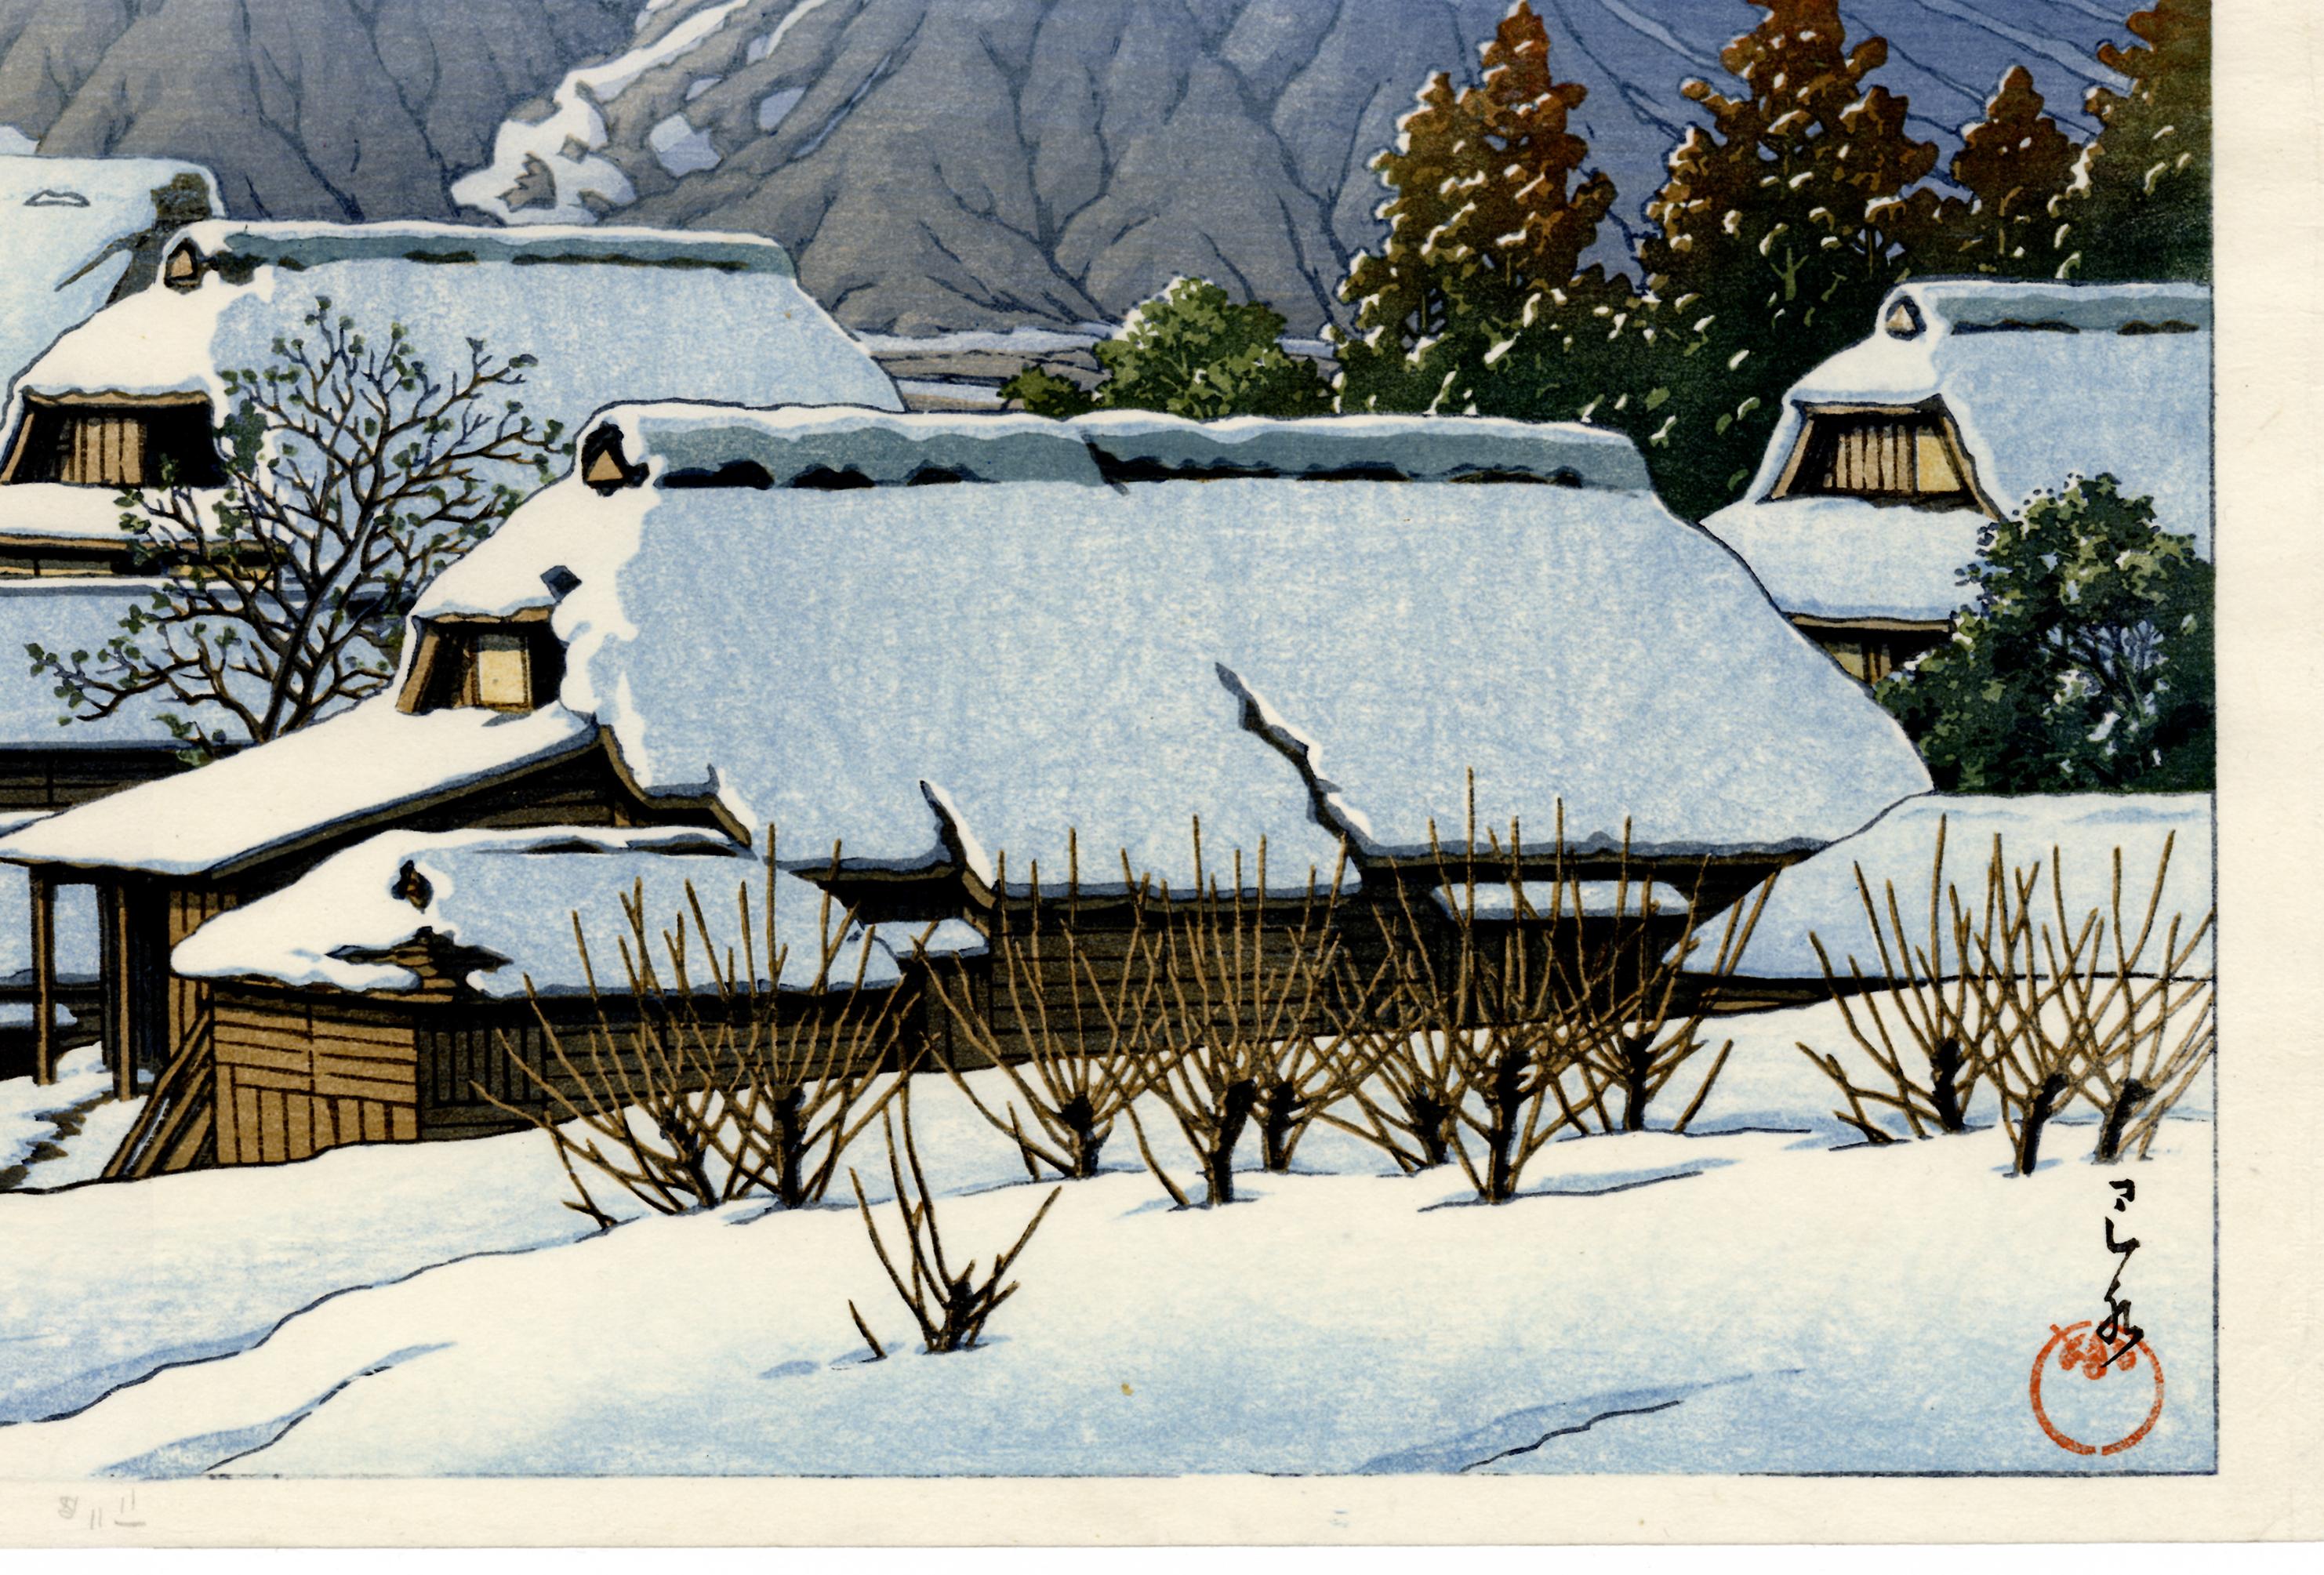 Mount Fuji After a Snowfall - Showa Print by Kawase Hasui